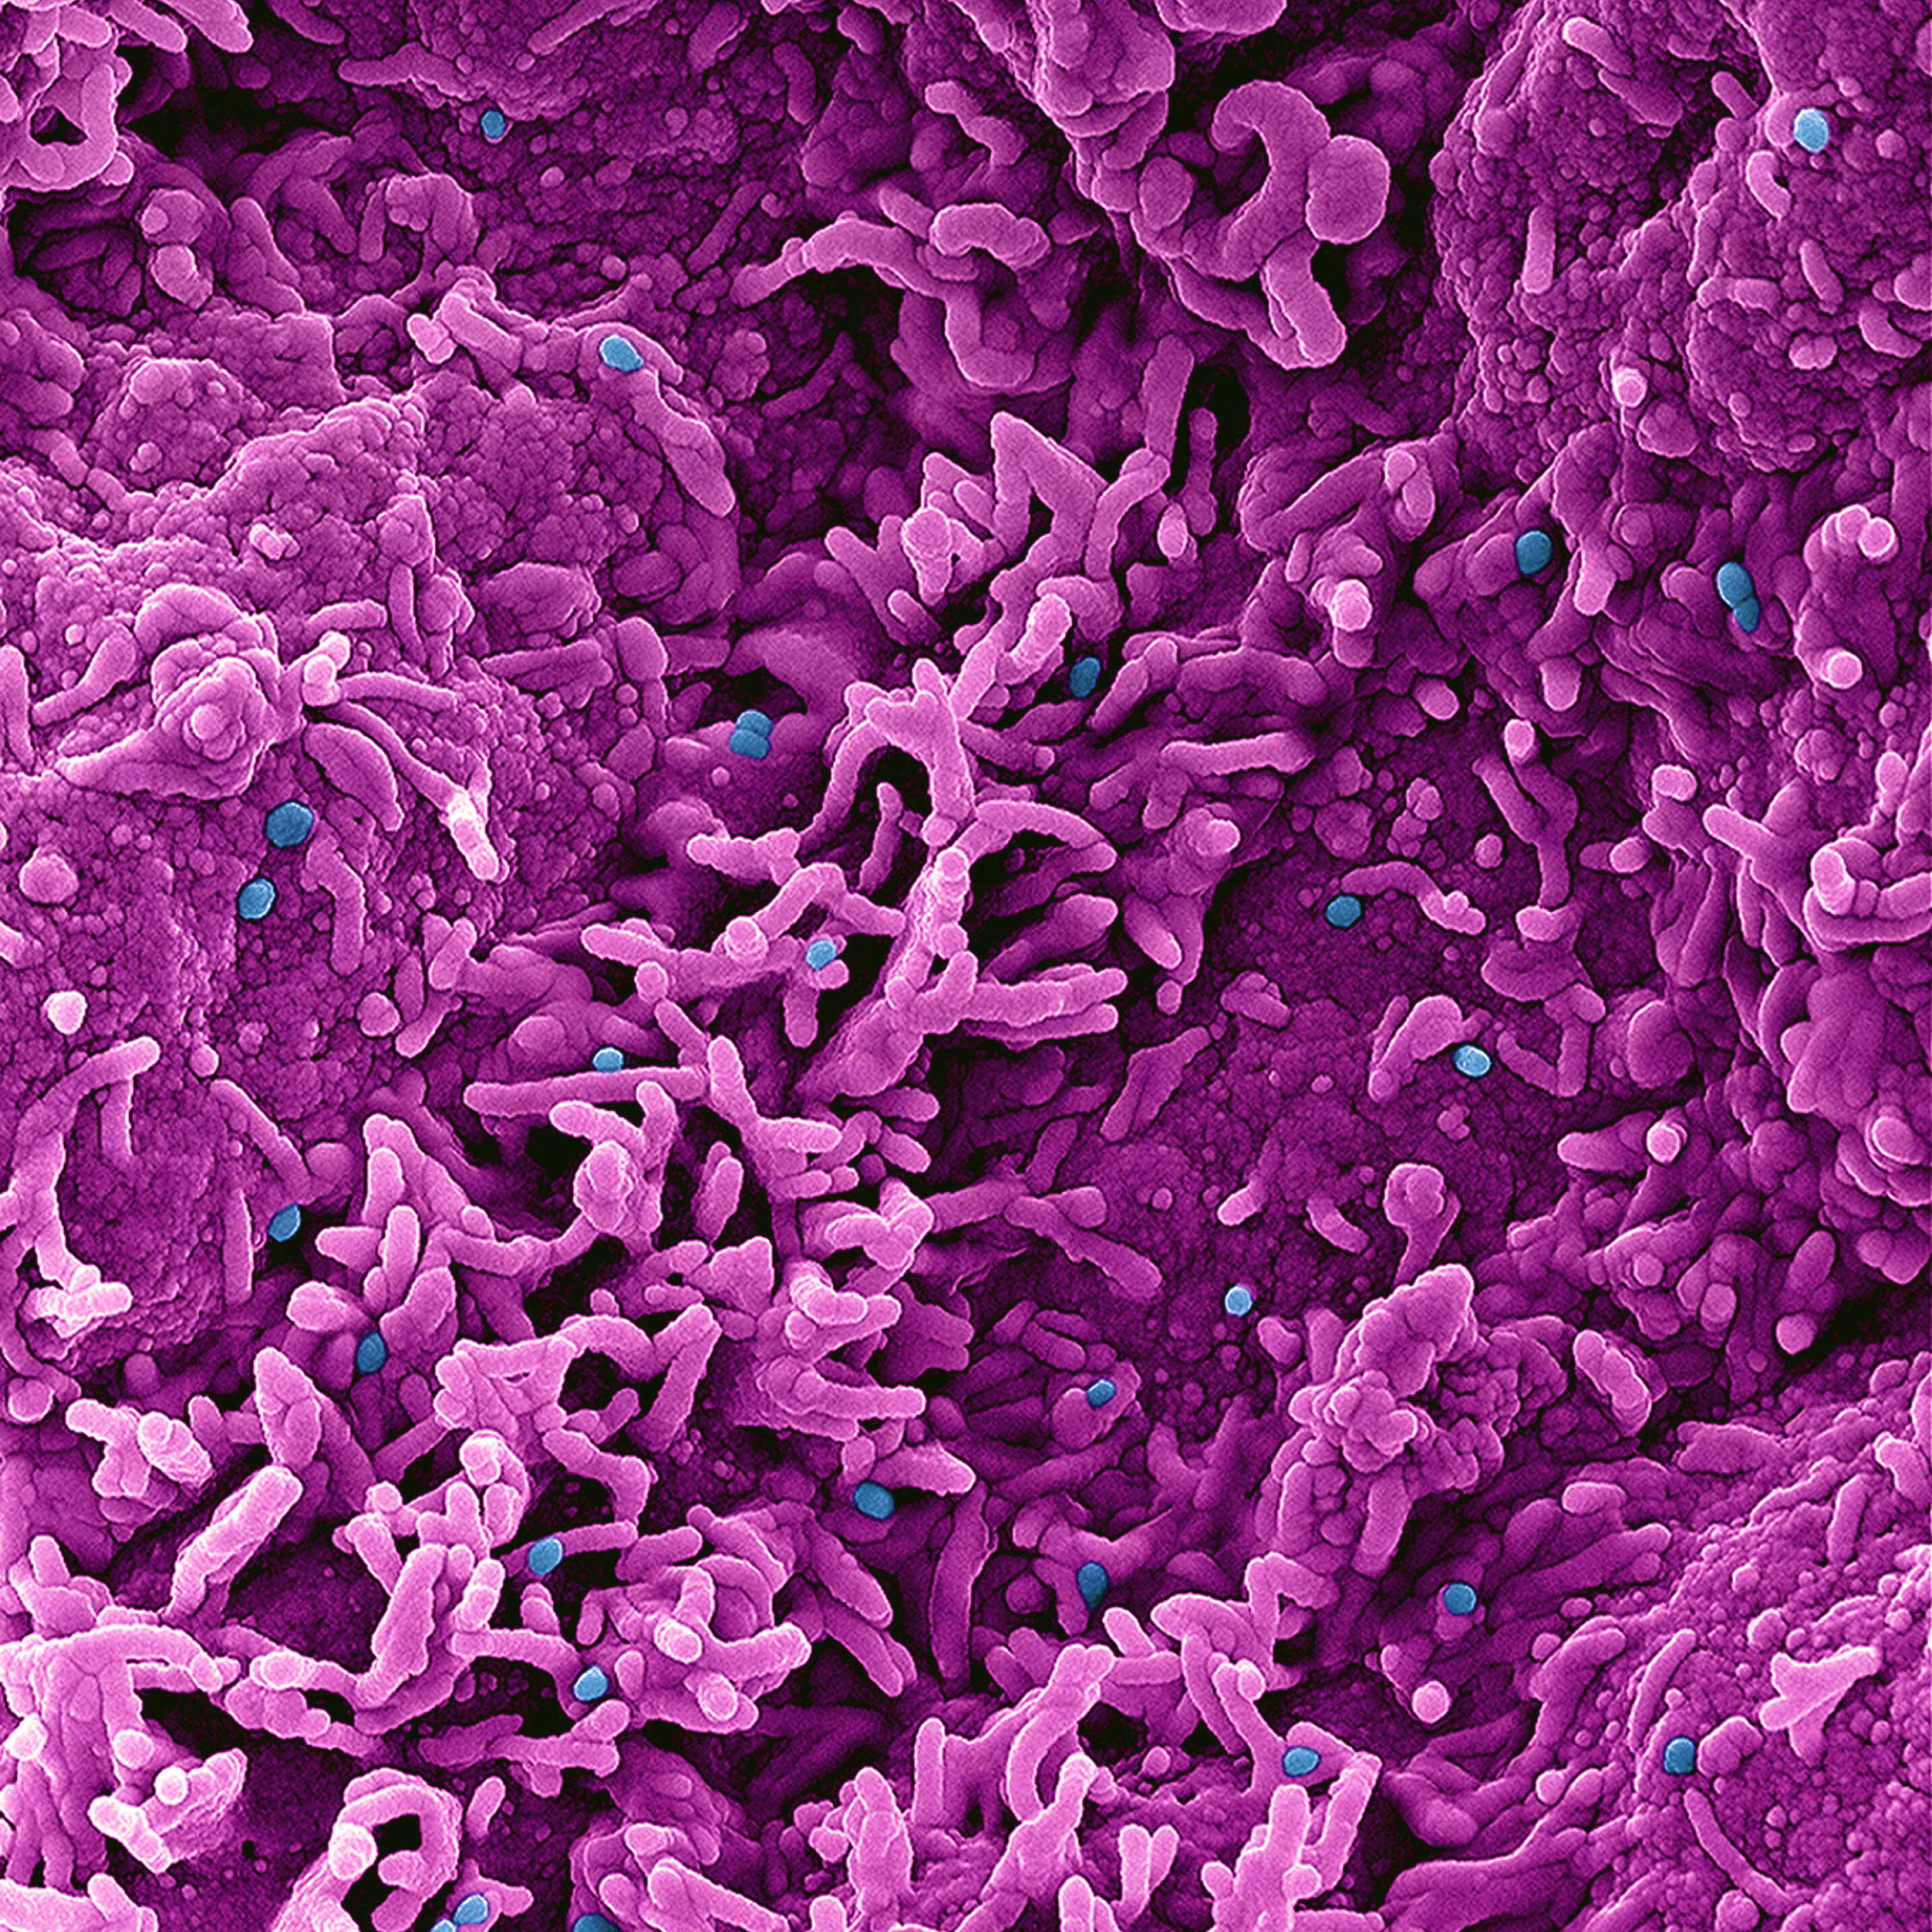 صورة فيروس جدري النسناس